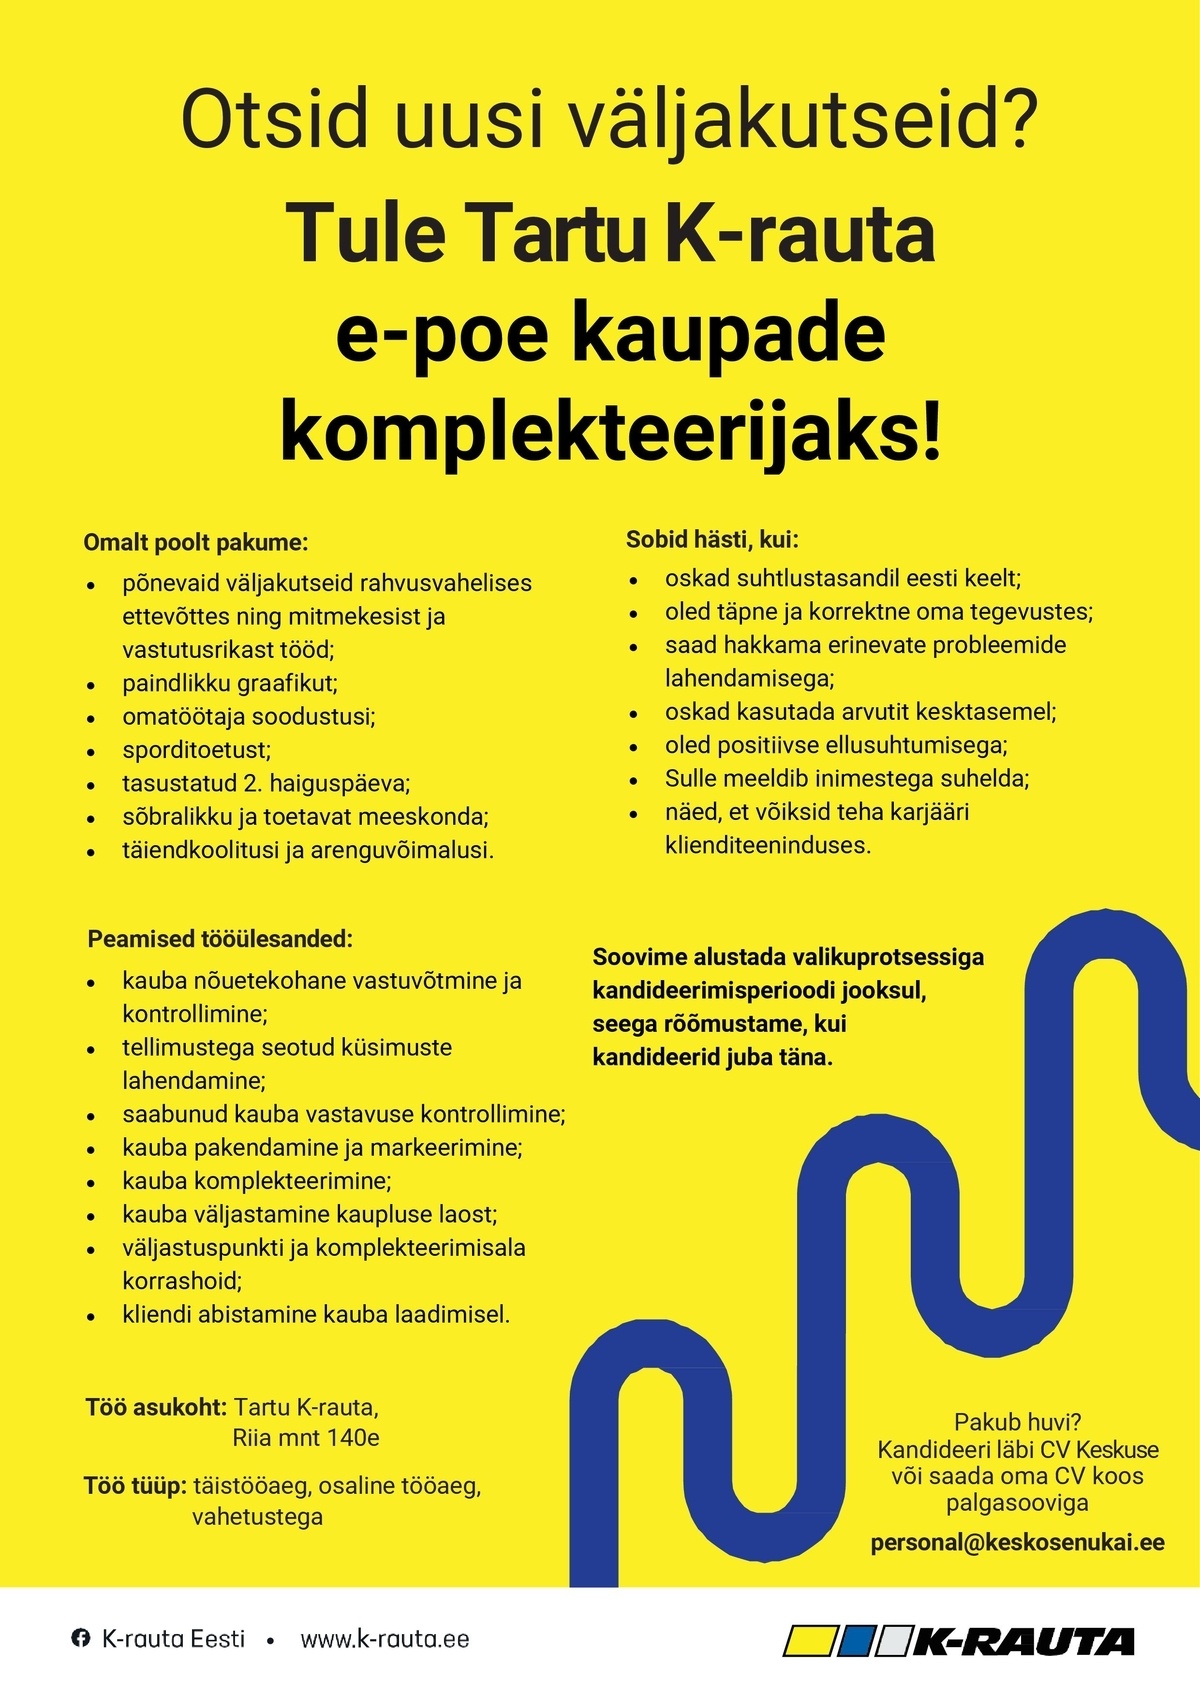 Kesko Senukai Estonia AS Tartu K-rauta e-poe kaupade komplekteerija